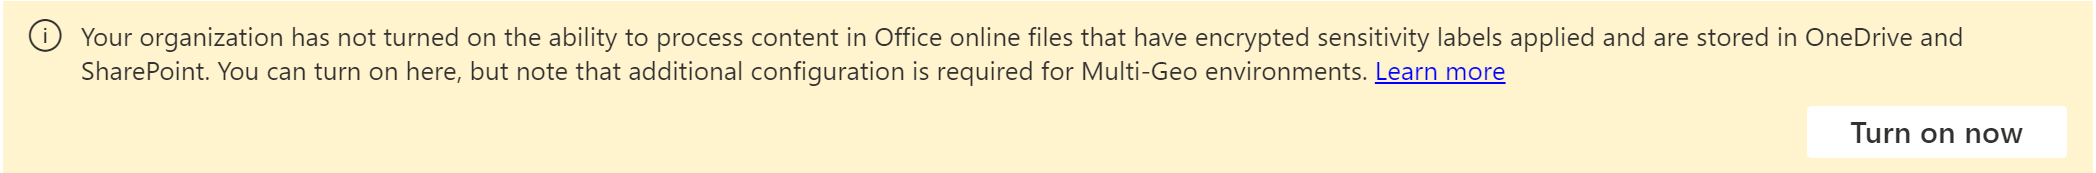 Habilite rótulos de confidencialidade para a faixa do Microsoft Office SharePoint Online e do OneDrive.